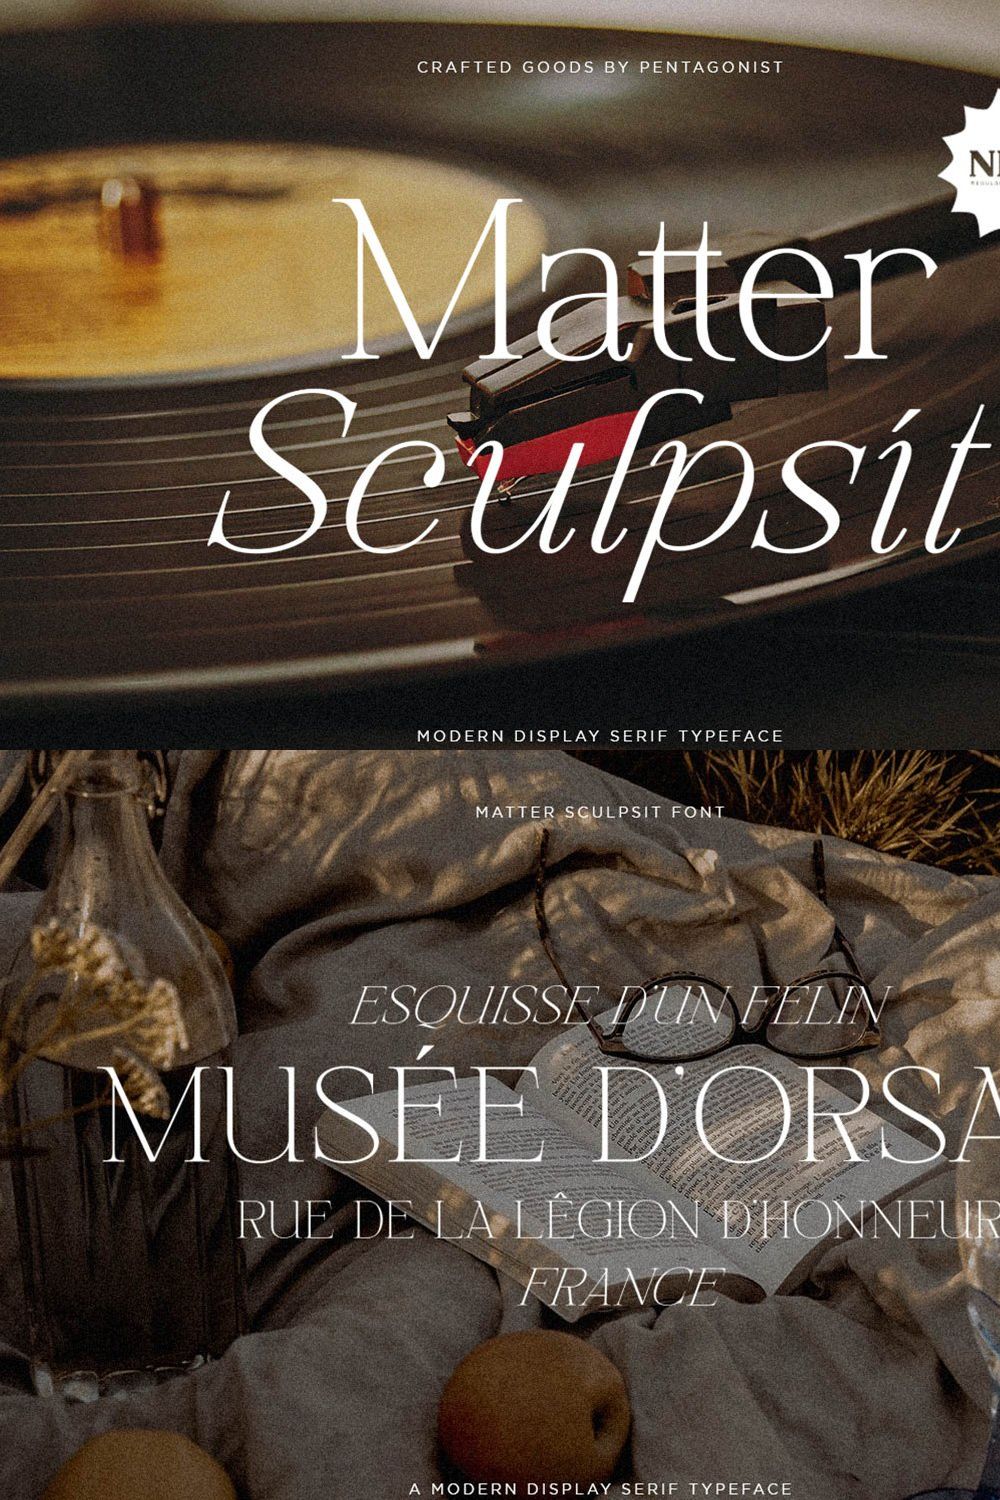 Matter Sculpsit | Modern serif pinterest preview image.